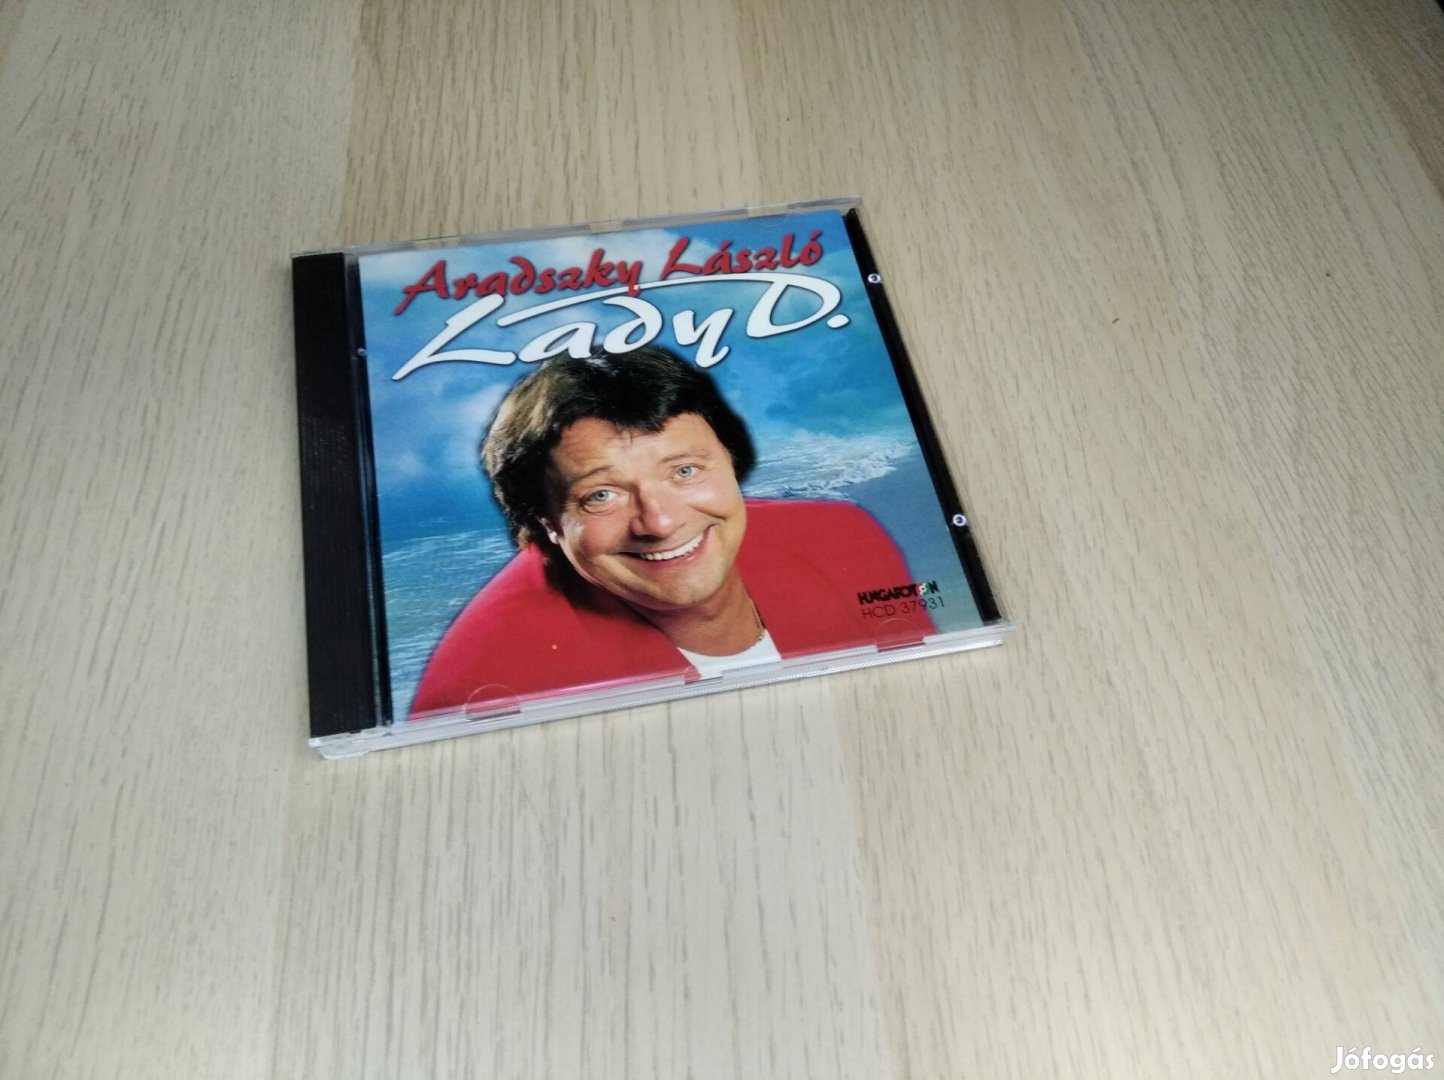 Aradszky László - Lady D. / CD (Hungaroton)